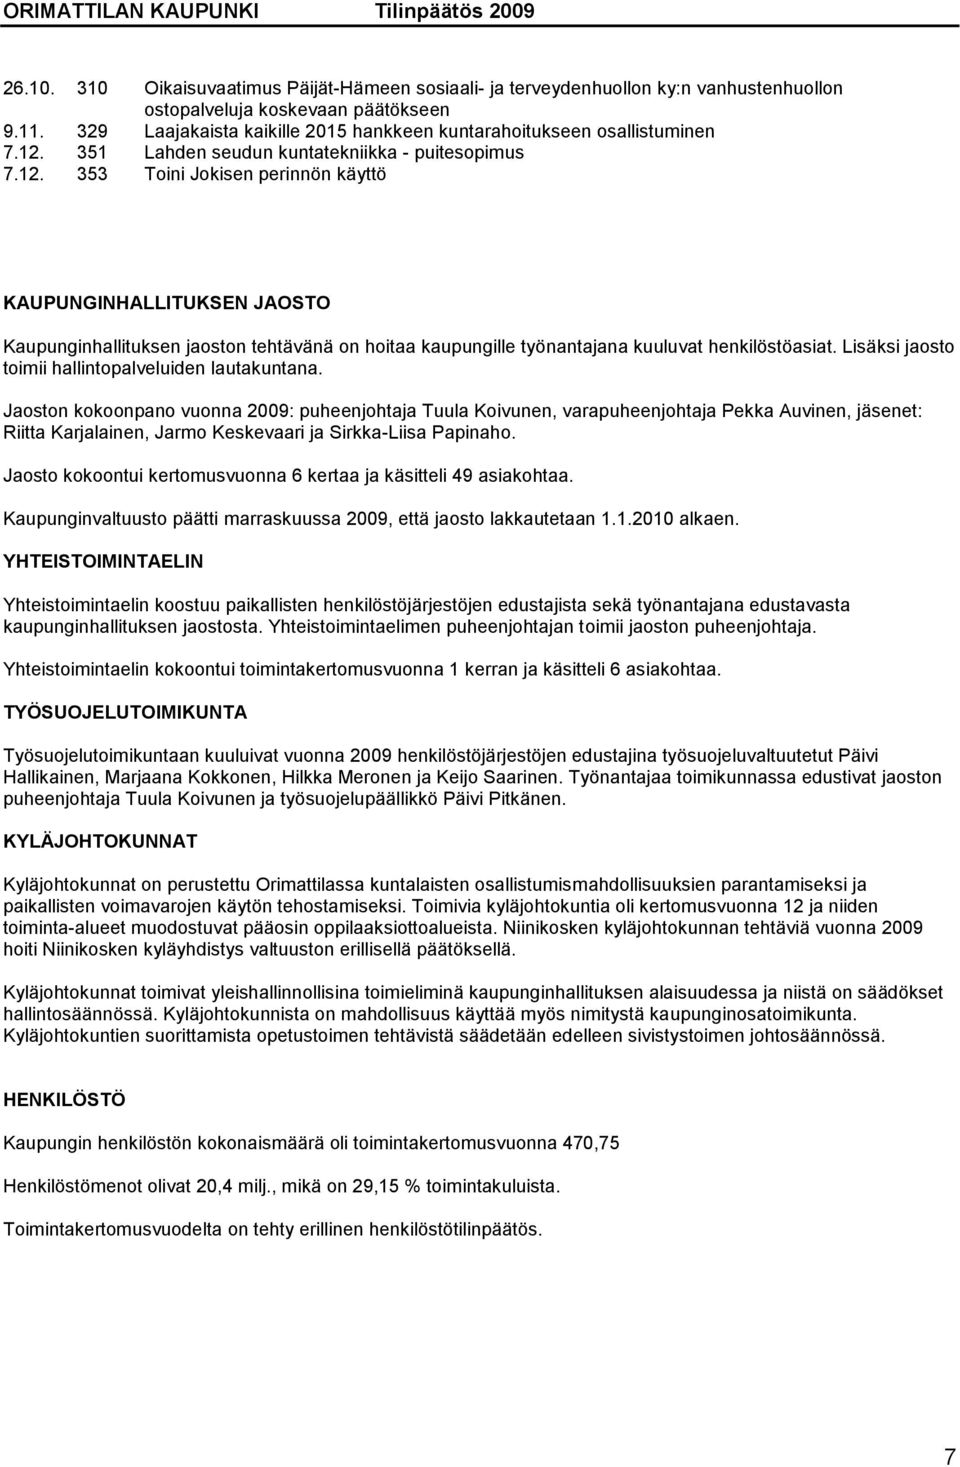 351 Lahden seudun kuntatekniikka - puitesopimus 7.12.